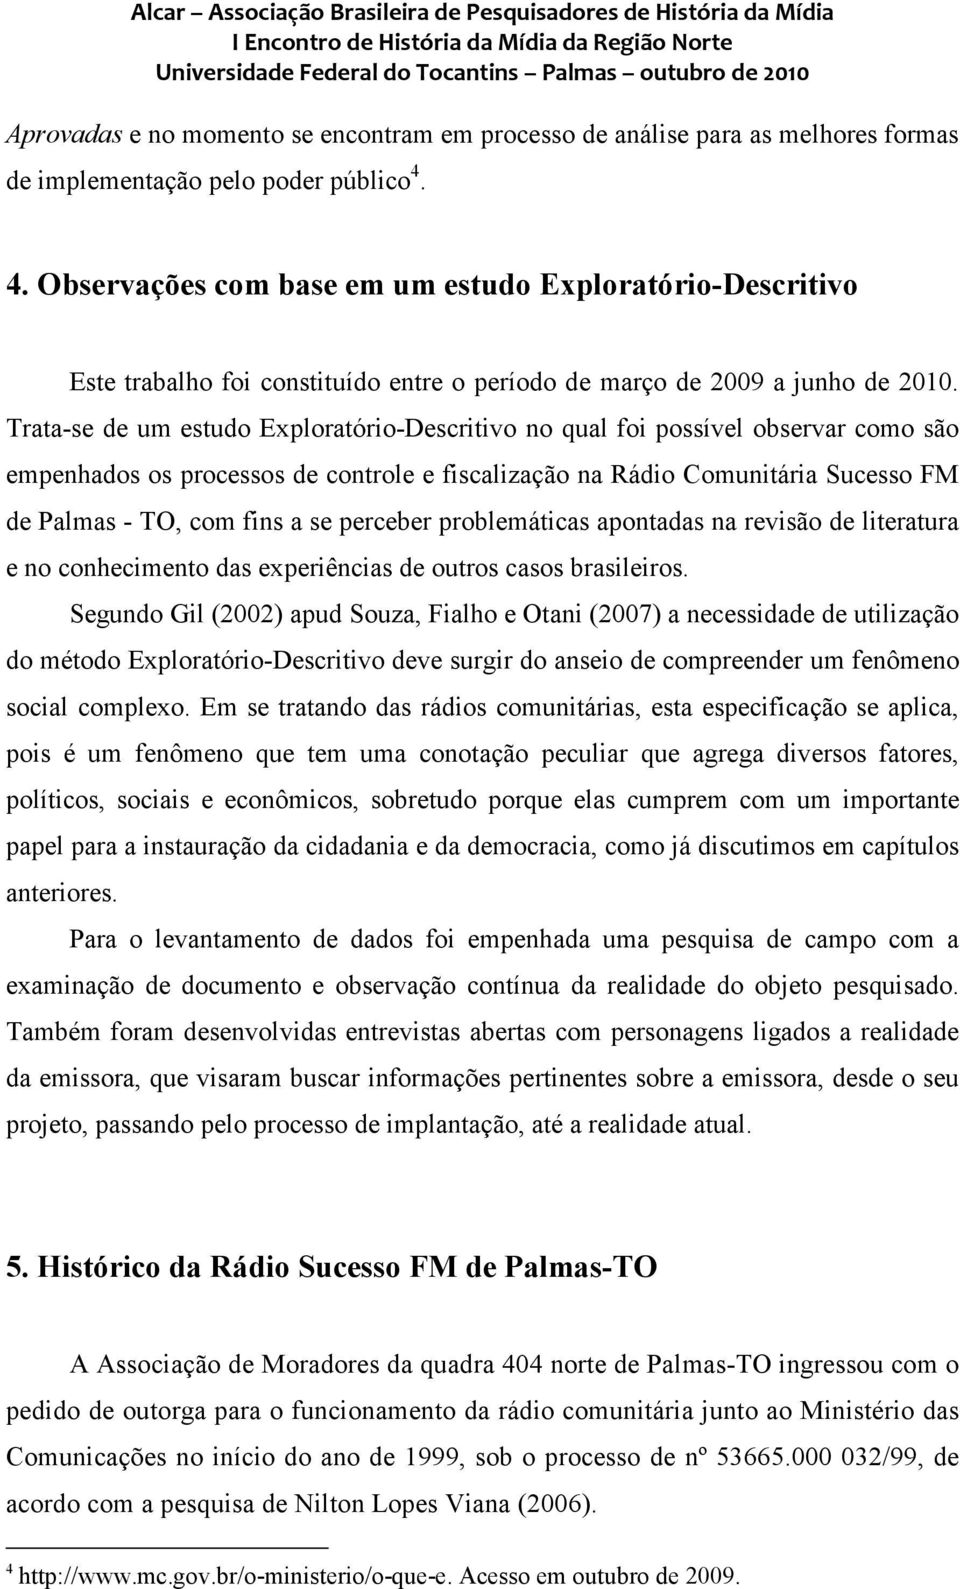 Trata-se de um estudo Exploratório-Descritivo no qual foi possível observar como são empenhados os processos de controle e fiscalização na Rádio Comunitária Sucesso FM de Palmas - TO, com fins a se